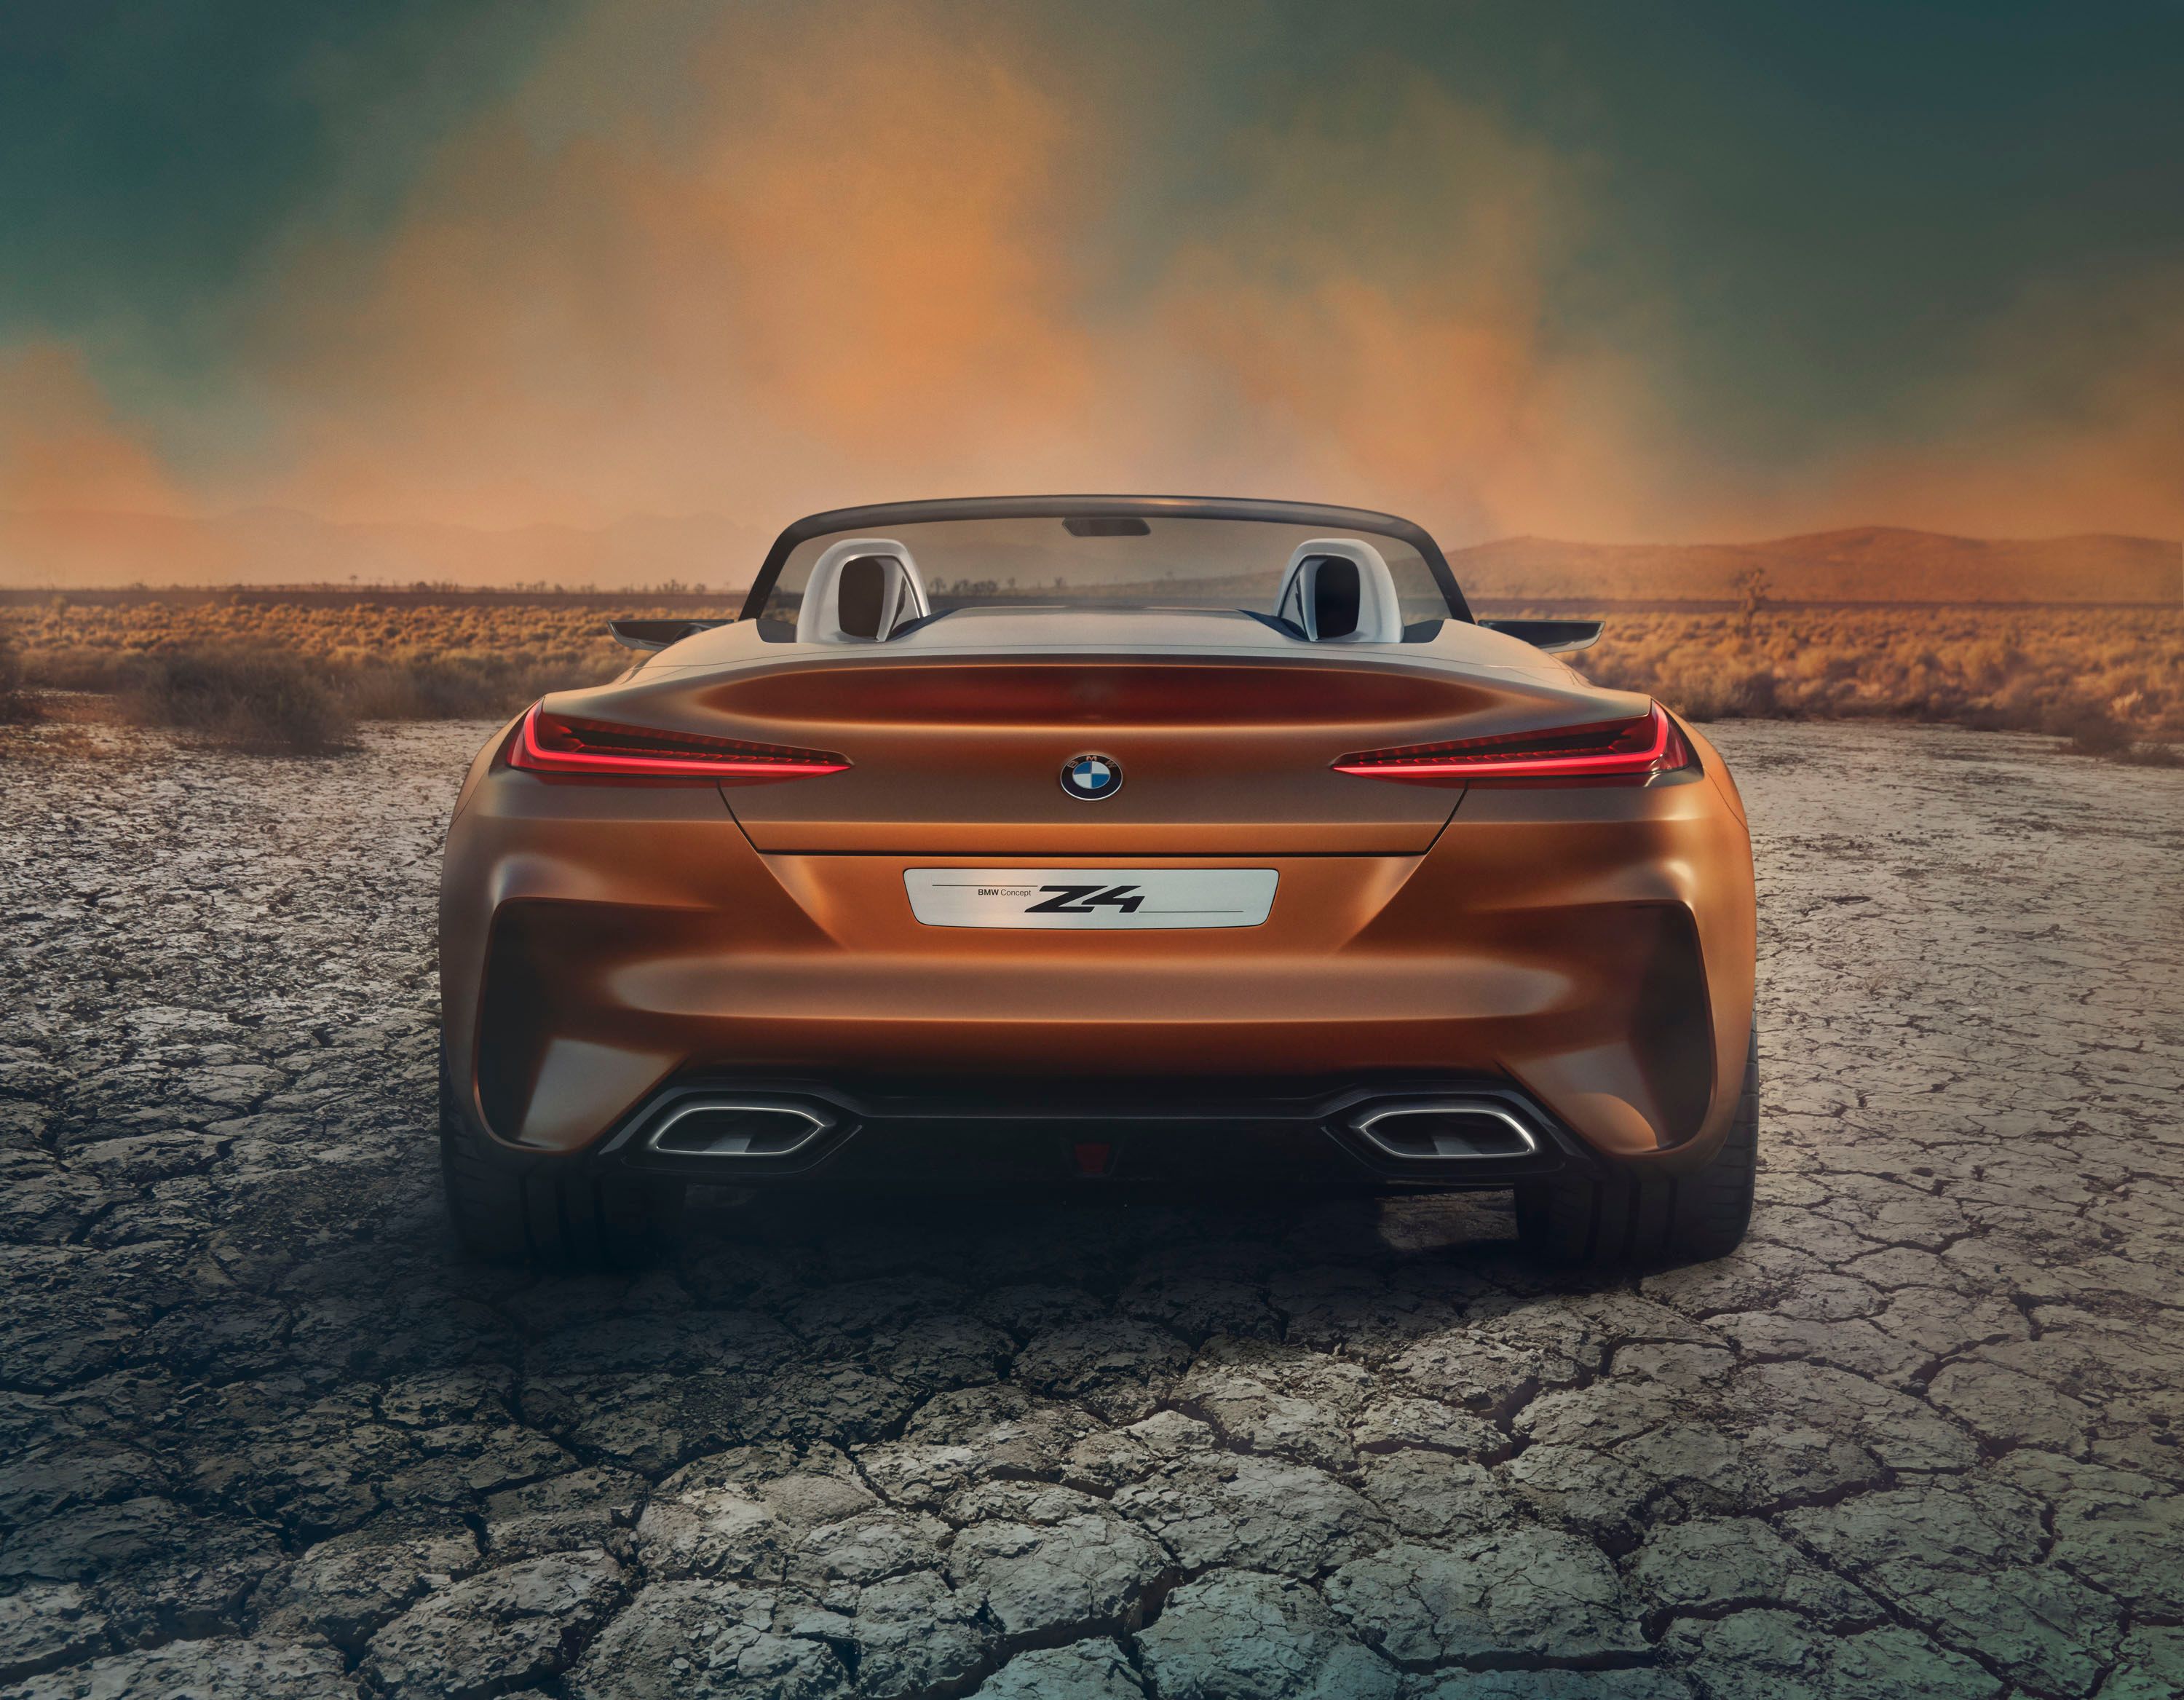 2017 BMW Concept Z4